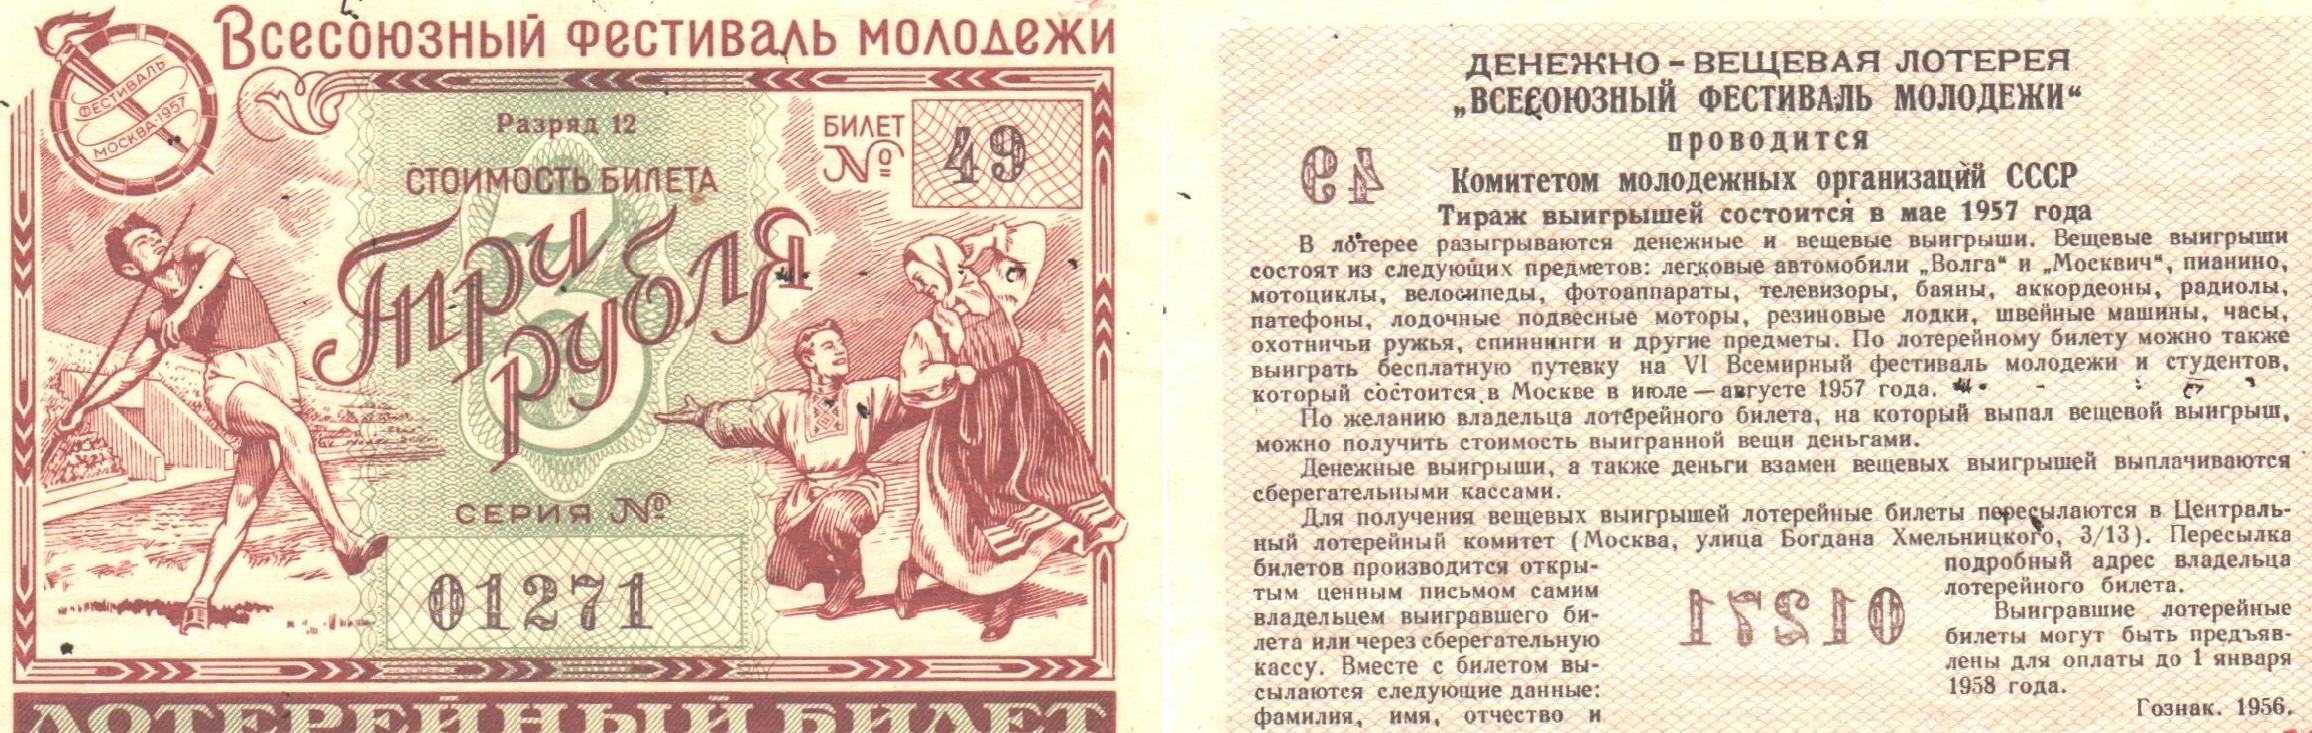 Лотерейные билеты закон. Лотерейный билет. Денежно-вещевая лотерея. Лотерейный билет 1956 года. Денежно-вещевая лотерея СССР.